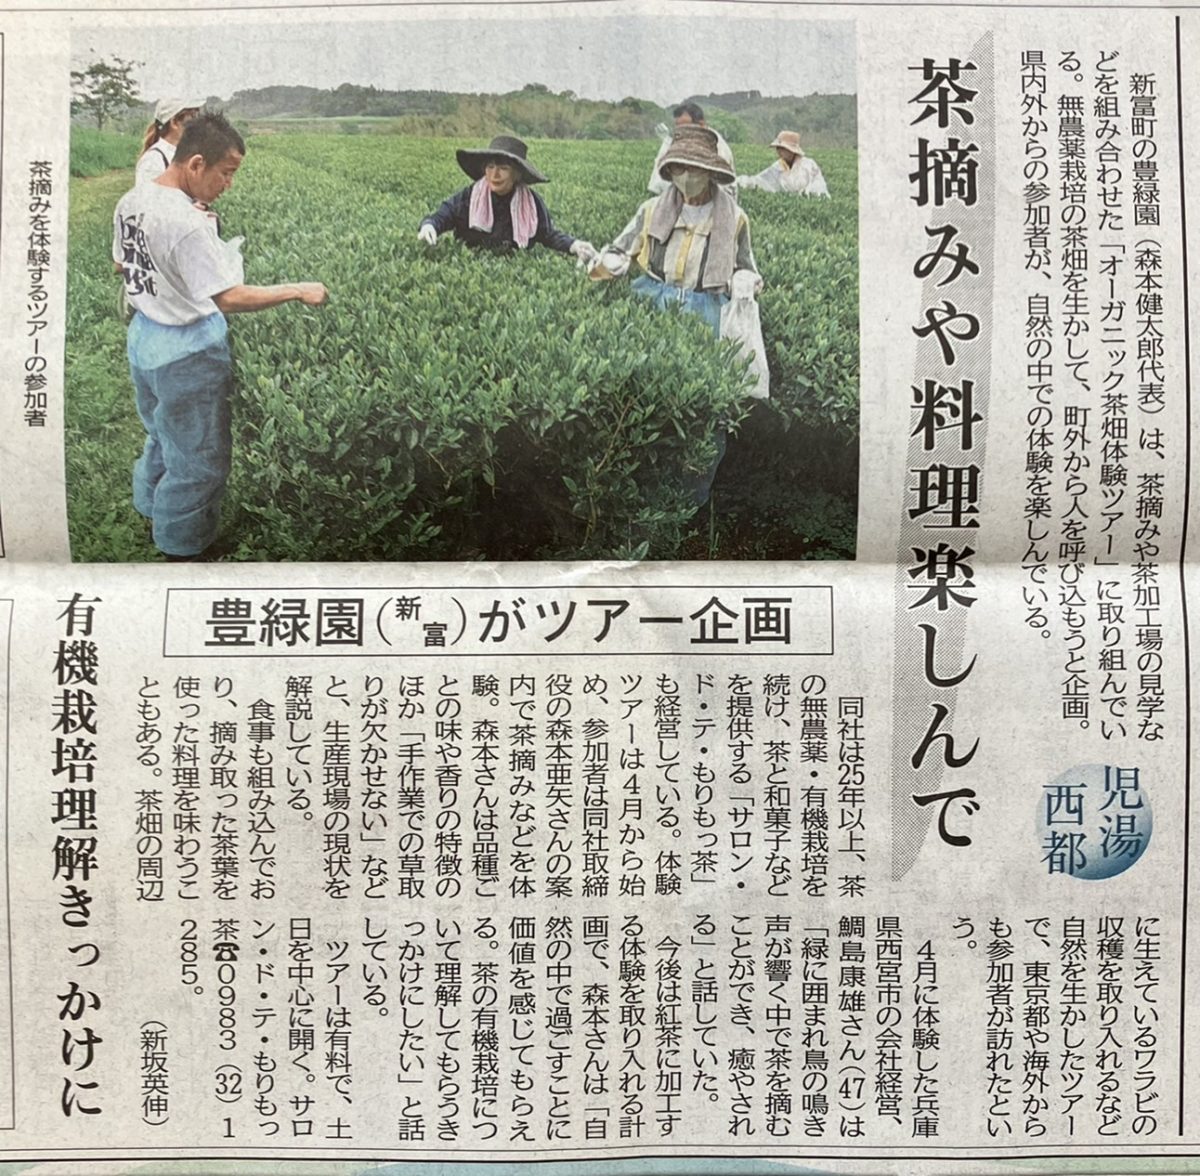 宮日新聞さんに「オーガニック茶畑体験ツアー」について掲載してくださいました♪